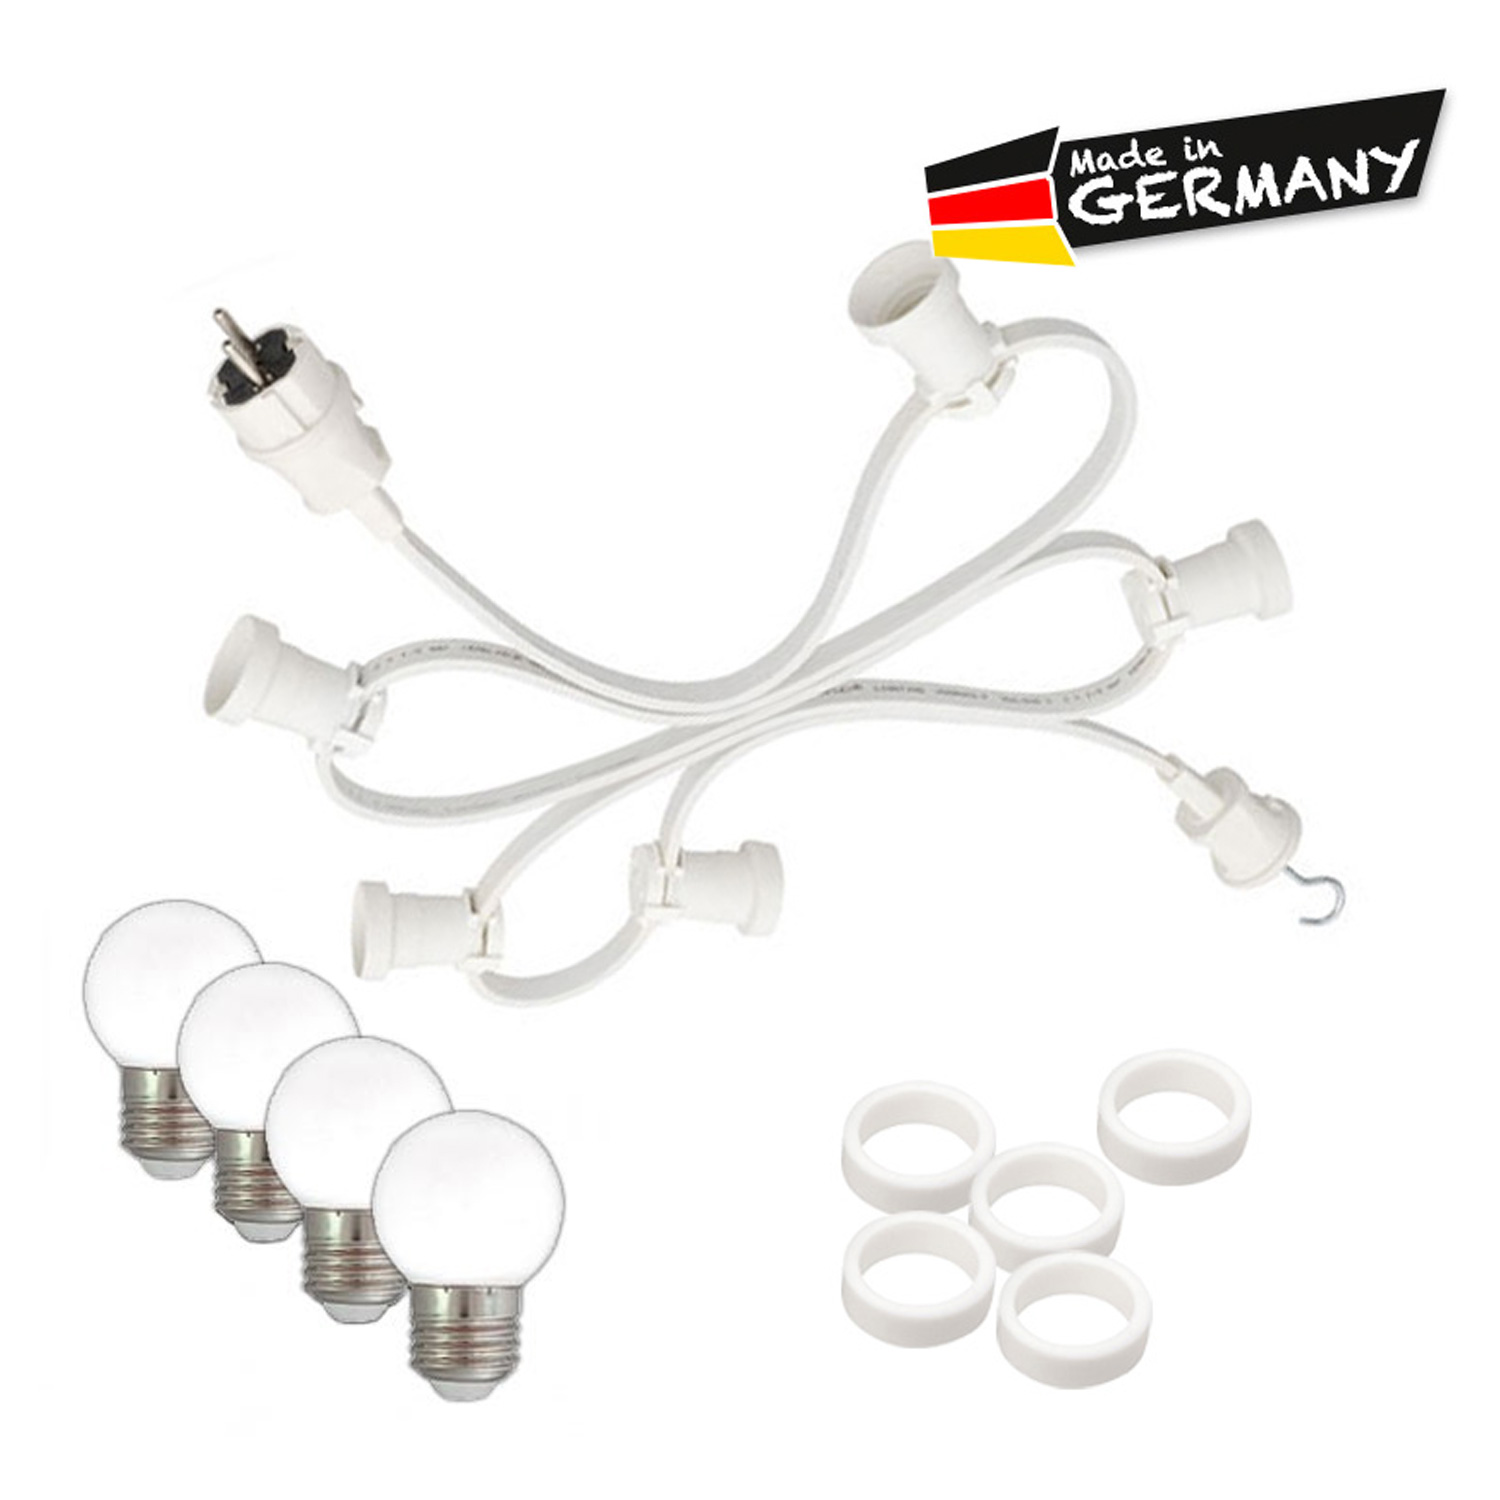 Illu-/Partylichterkette 10m - Außenlichterkette - Made in Germany - 20 x warmweiße LED Kugellampen